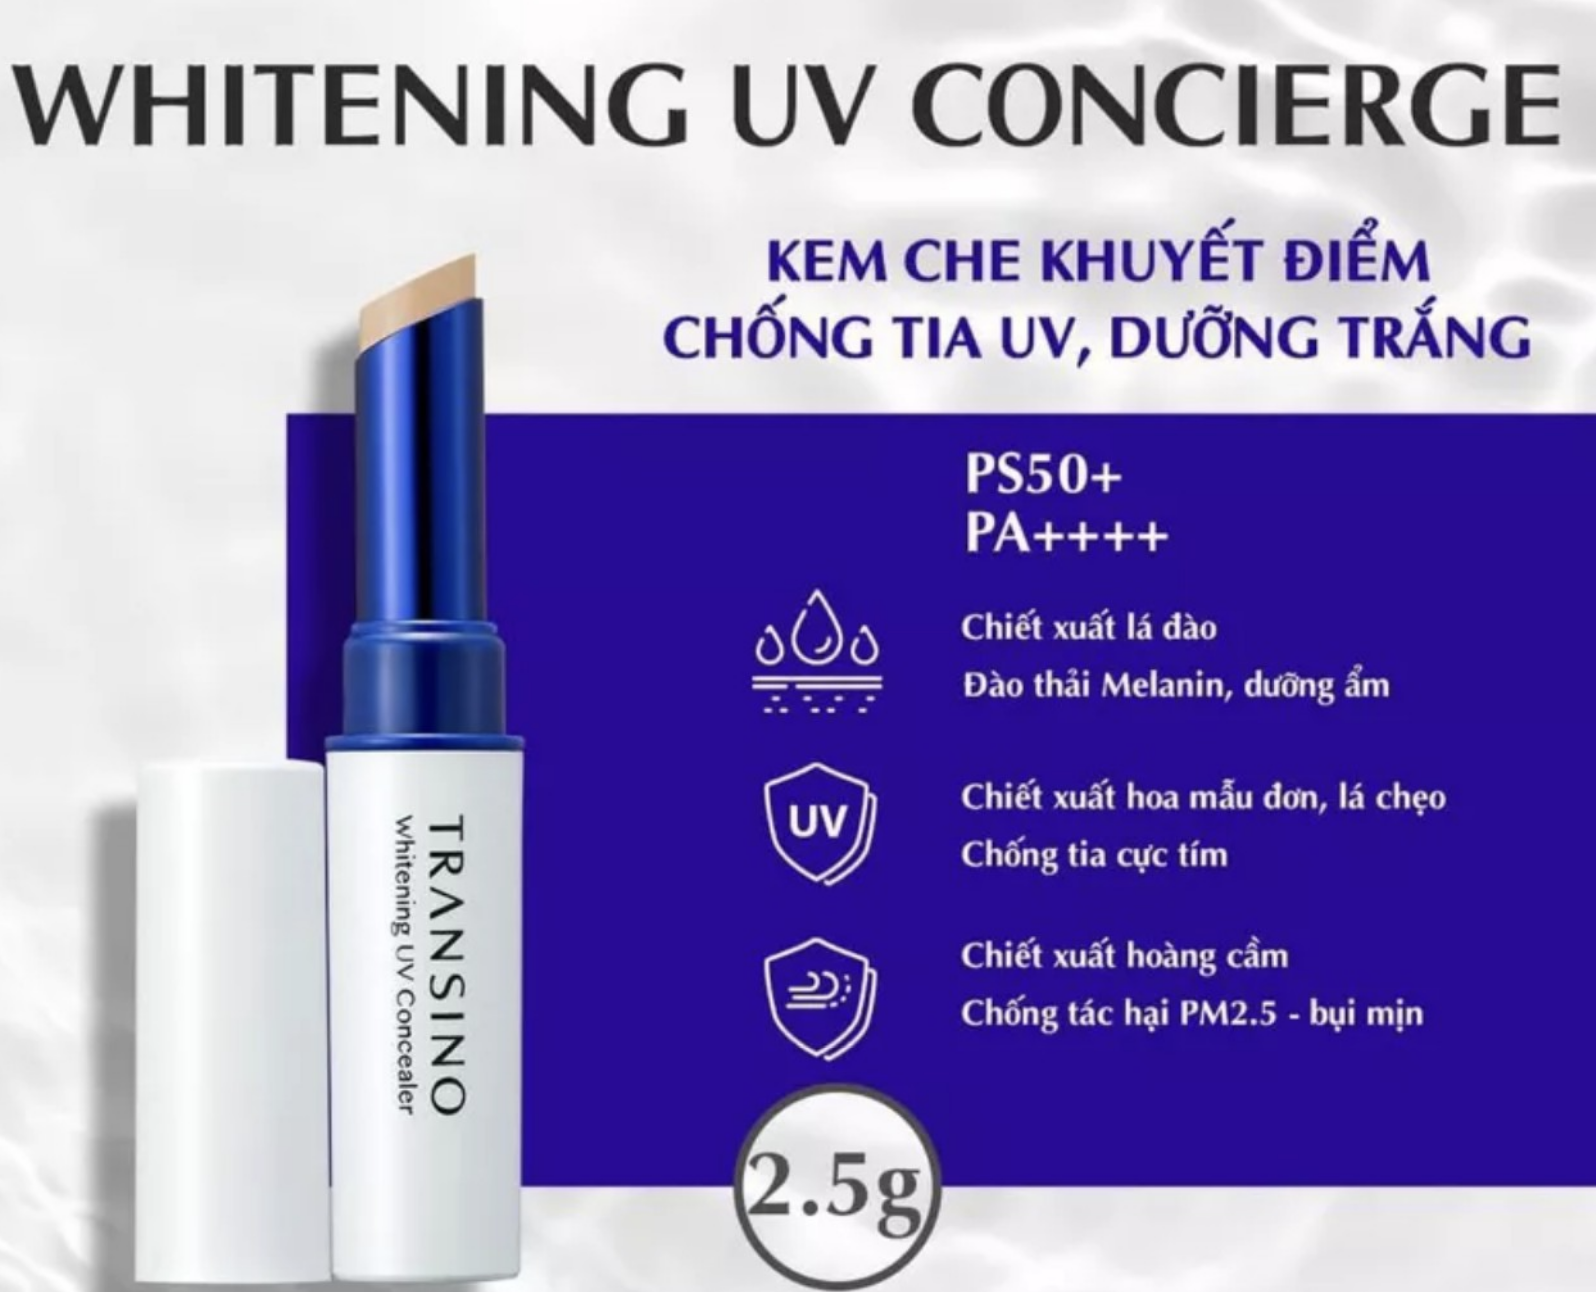 mochanstore.com Thanh Che Khuyet Diem Ho Tro Duong Trang TRANSINO Whitening UV Concealer 2.5g 1